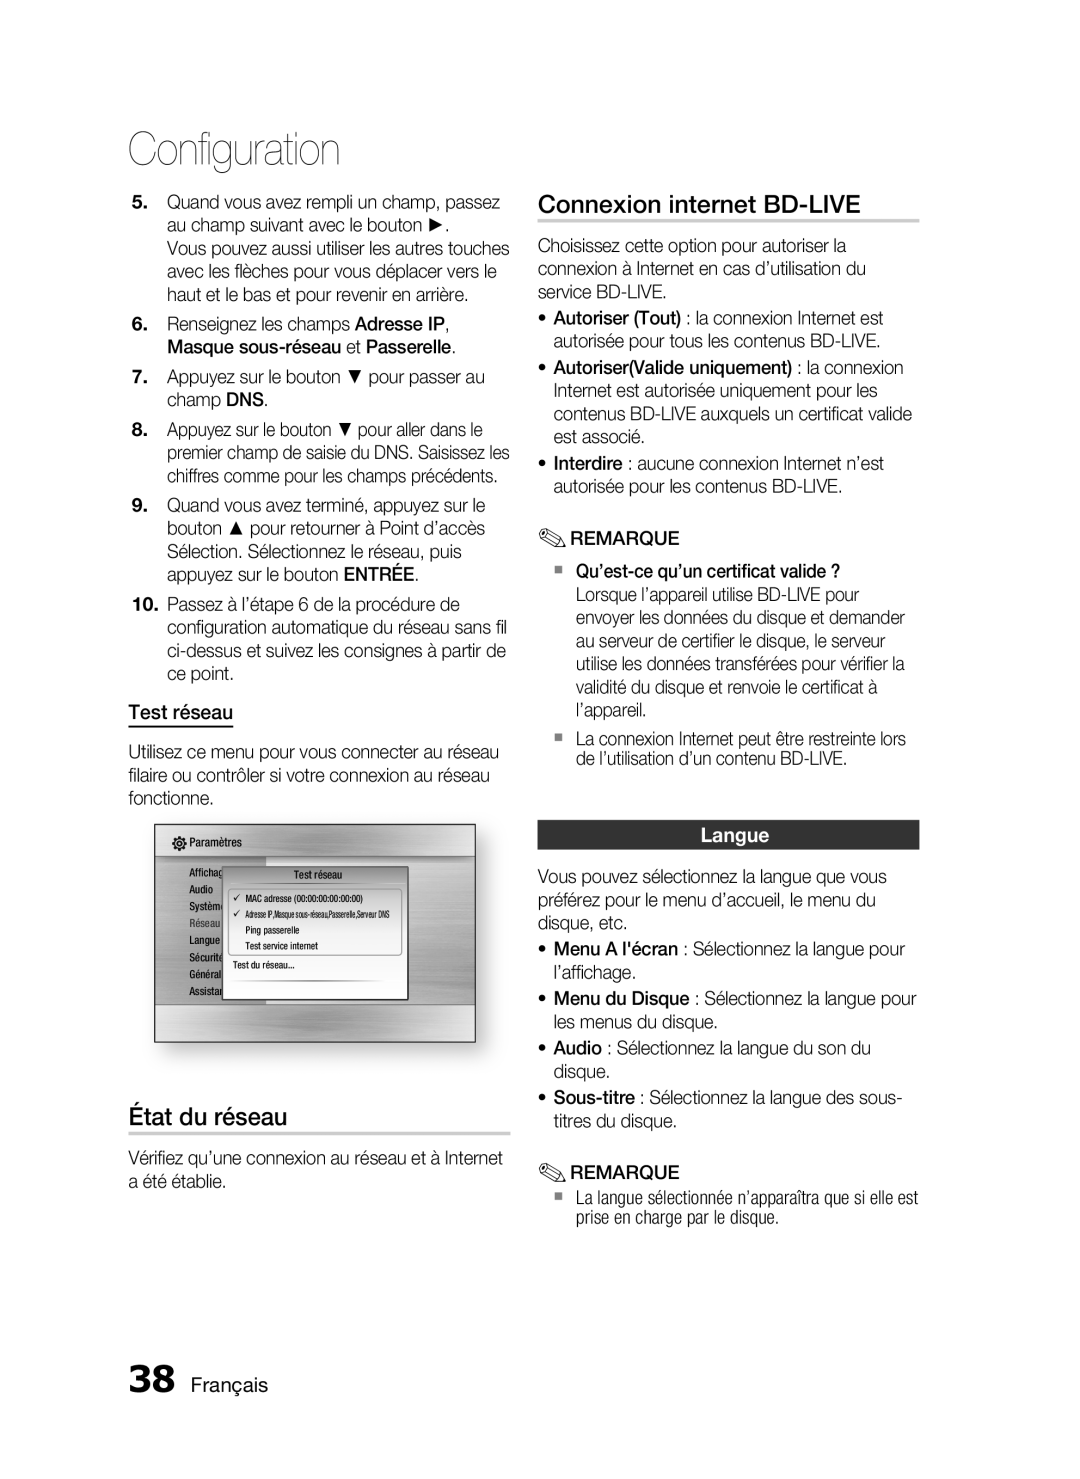 Samsung HT-C6200/XEF manual Connexion internet BD-LIVE, État du réseau, Test réseau, Langue, Français, Conﬁguration 